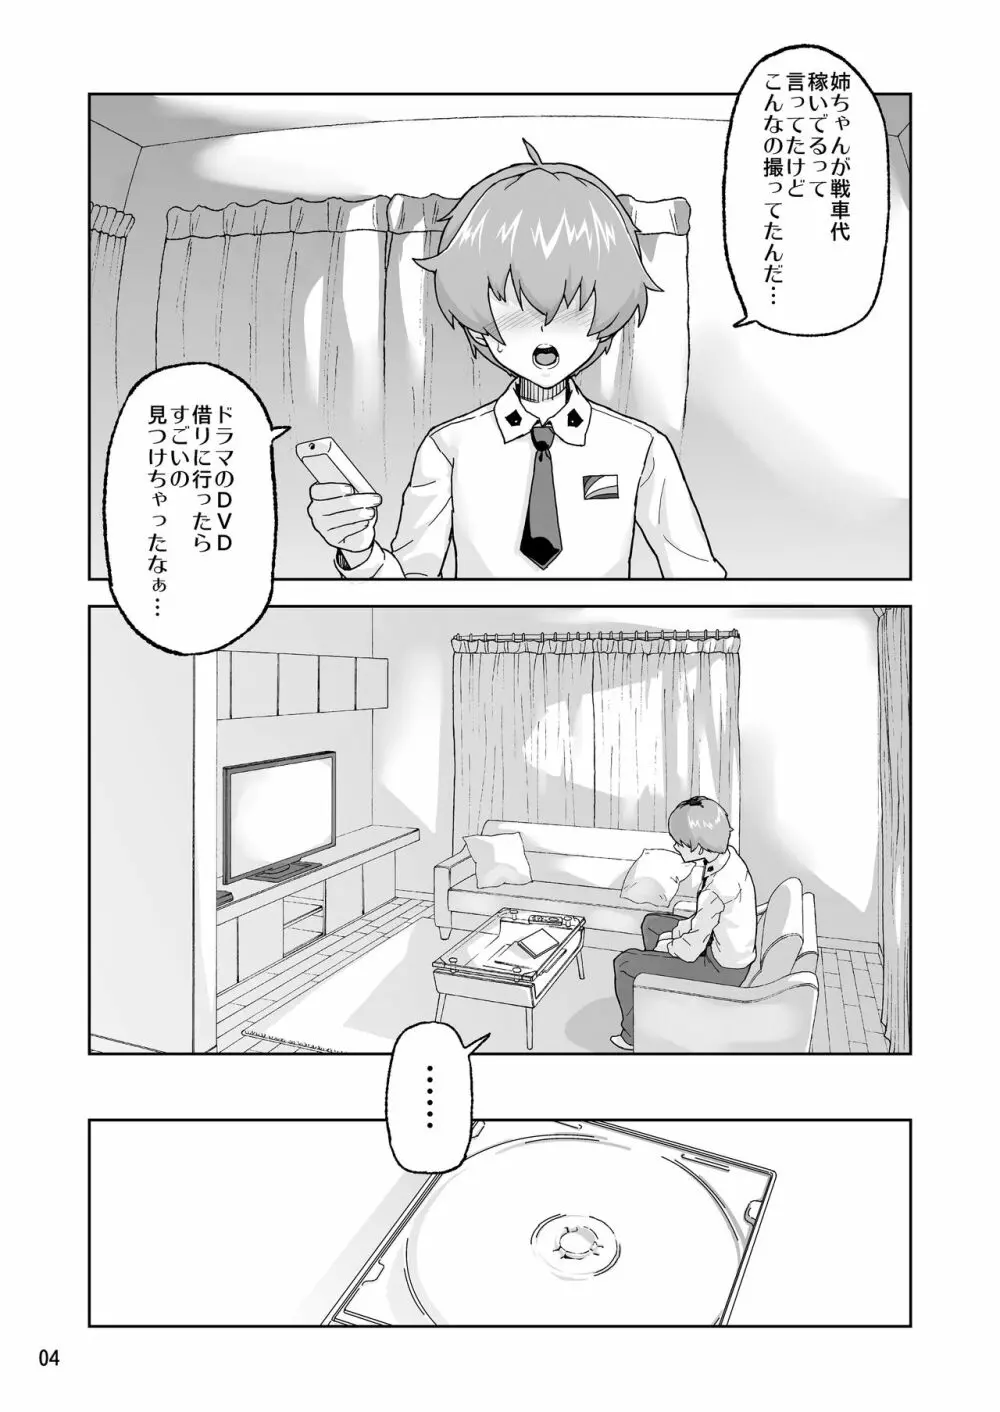 アン◯ィオ校III年 安〇ちよみ1〇才 - page3